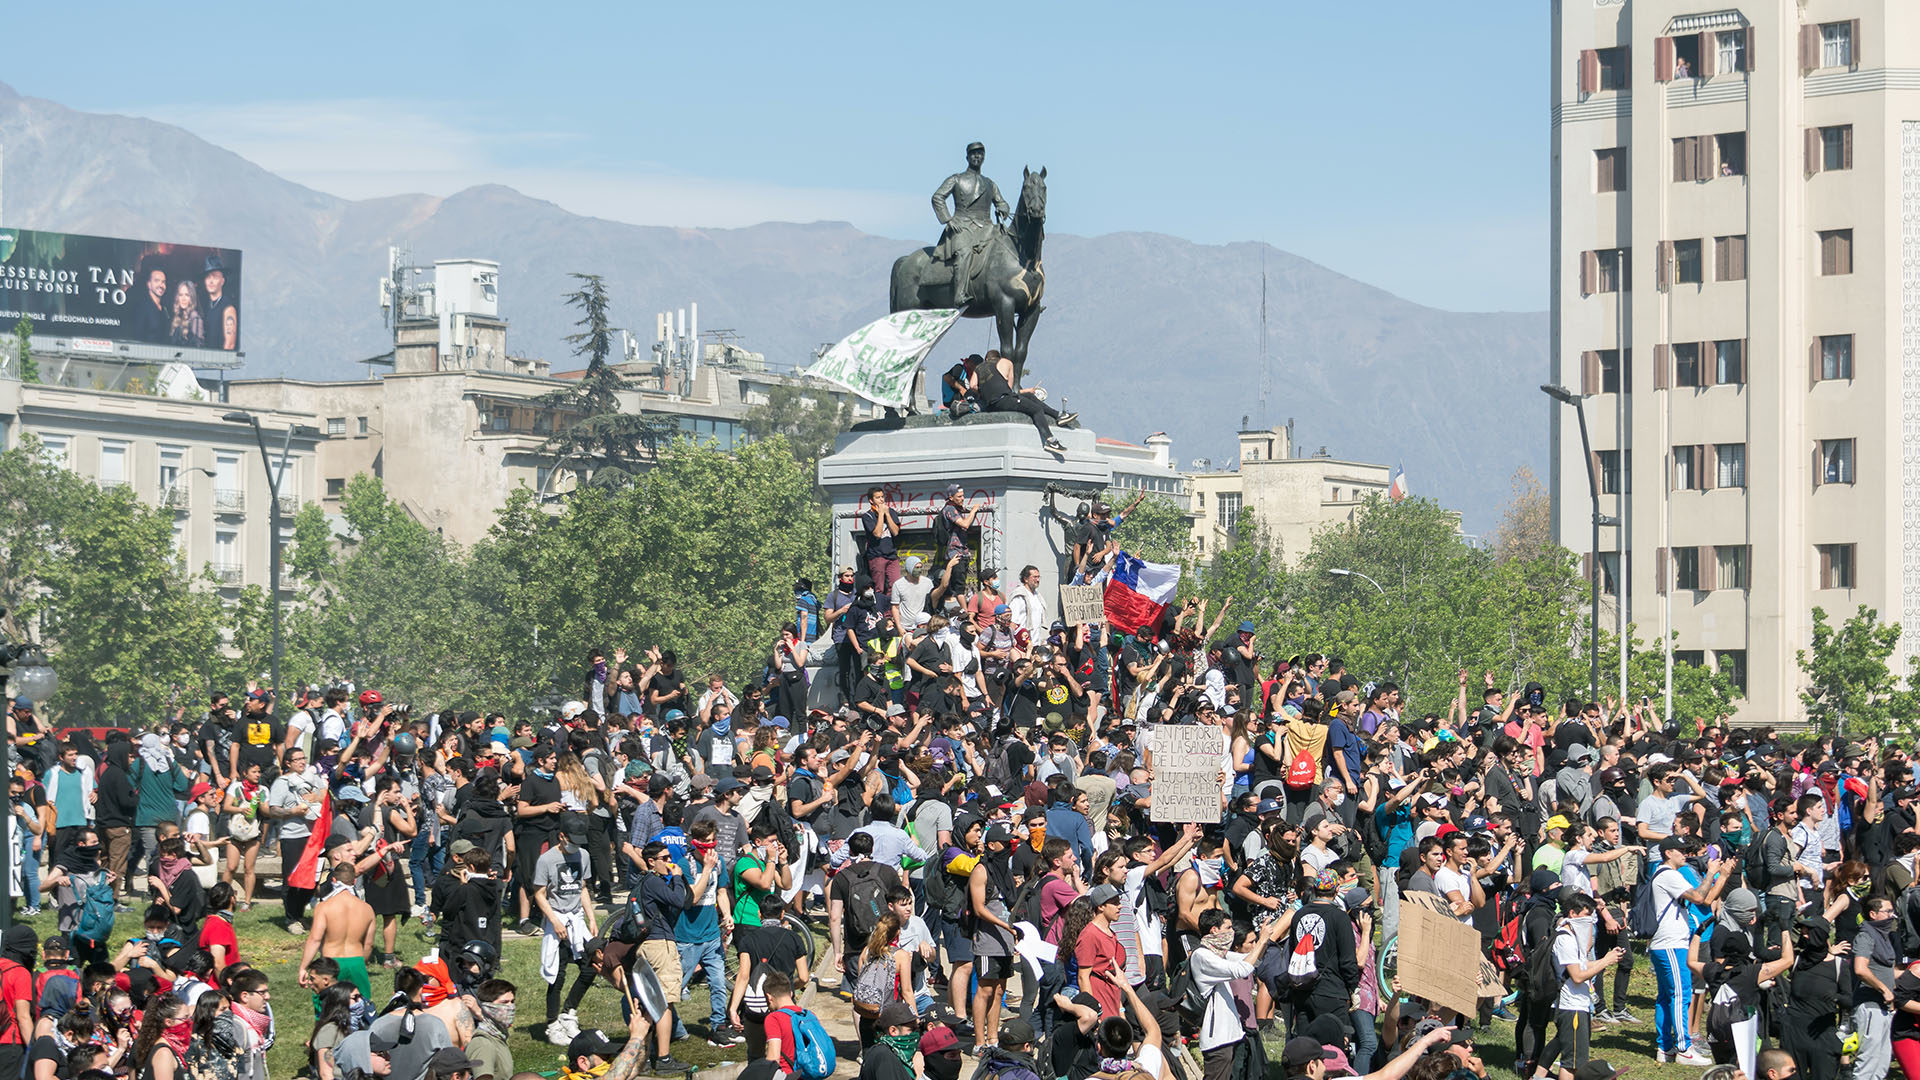 Les manifestants protestent contre un modèle de développement qui ne profite qu'à une minorité | Carlos Figueroa/Wikimedia commons